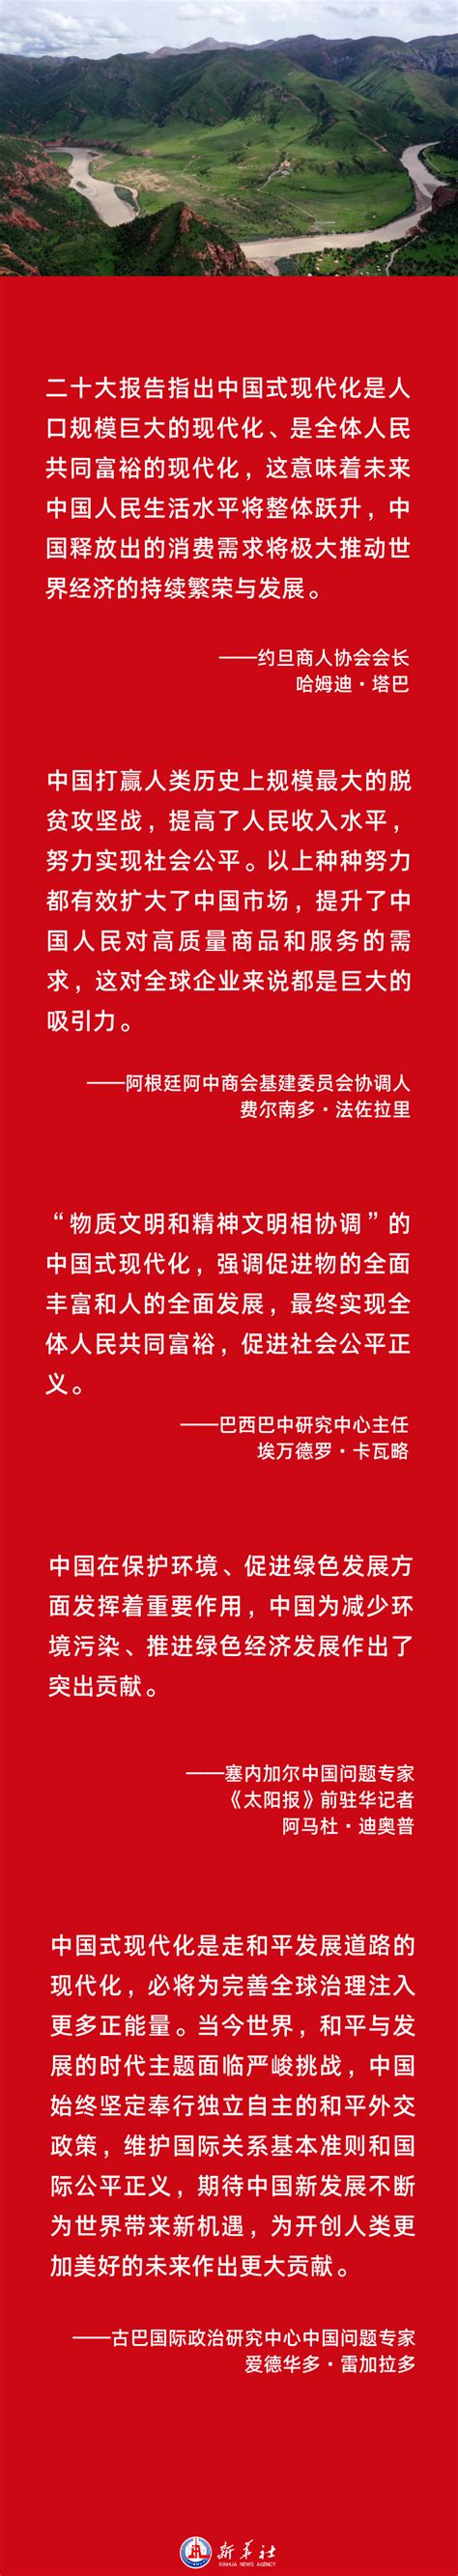 “这是人类发展史上真正的奇迹”——国际社会热议中国式现代化的世界意义 - 晋城市人民政府